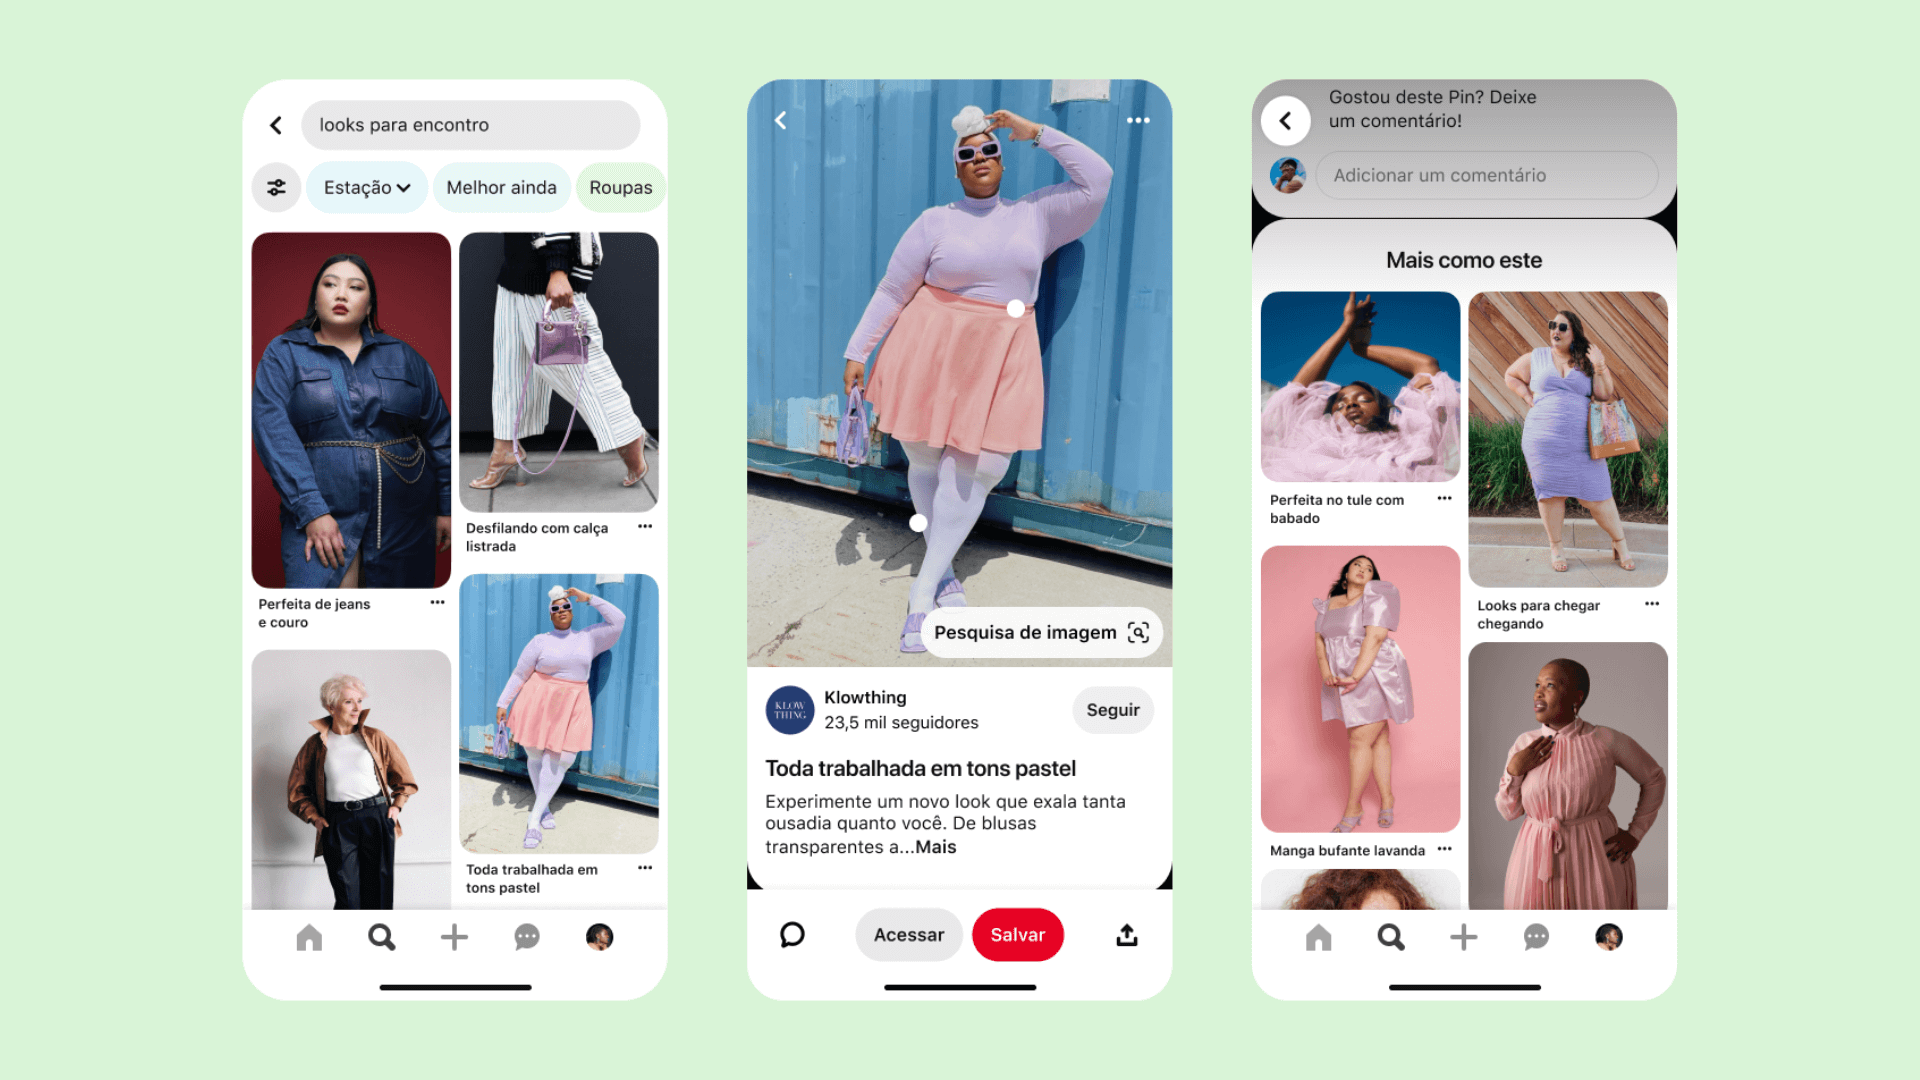 Tecnologia pioneira do Pinterest identifica tipos de corpos e promove inclusão na plataforma